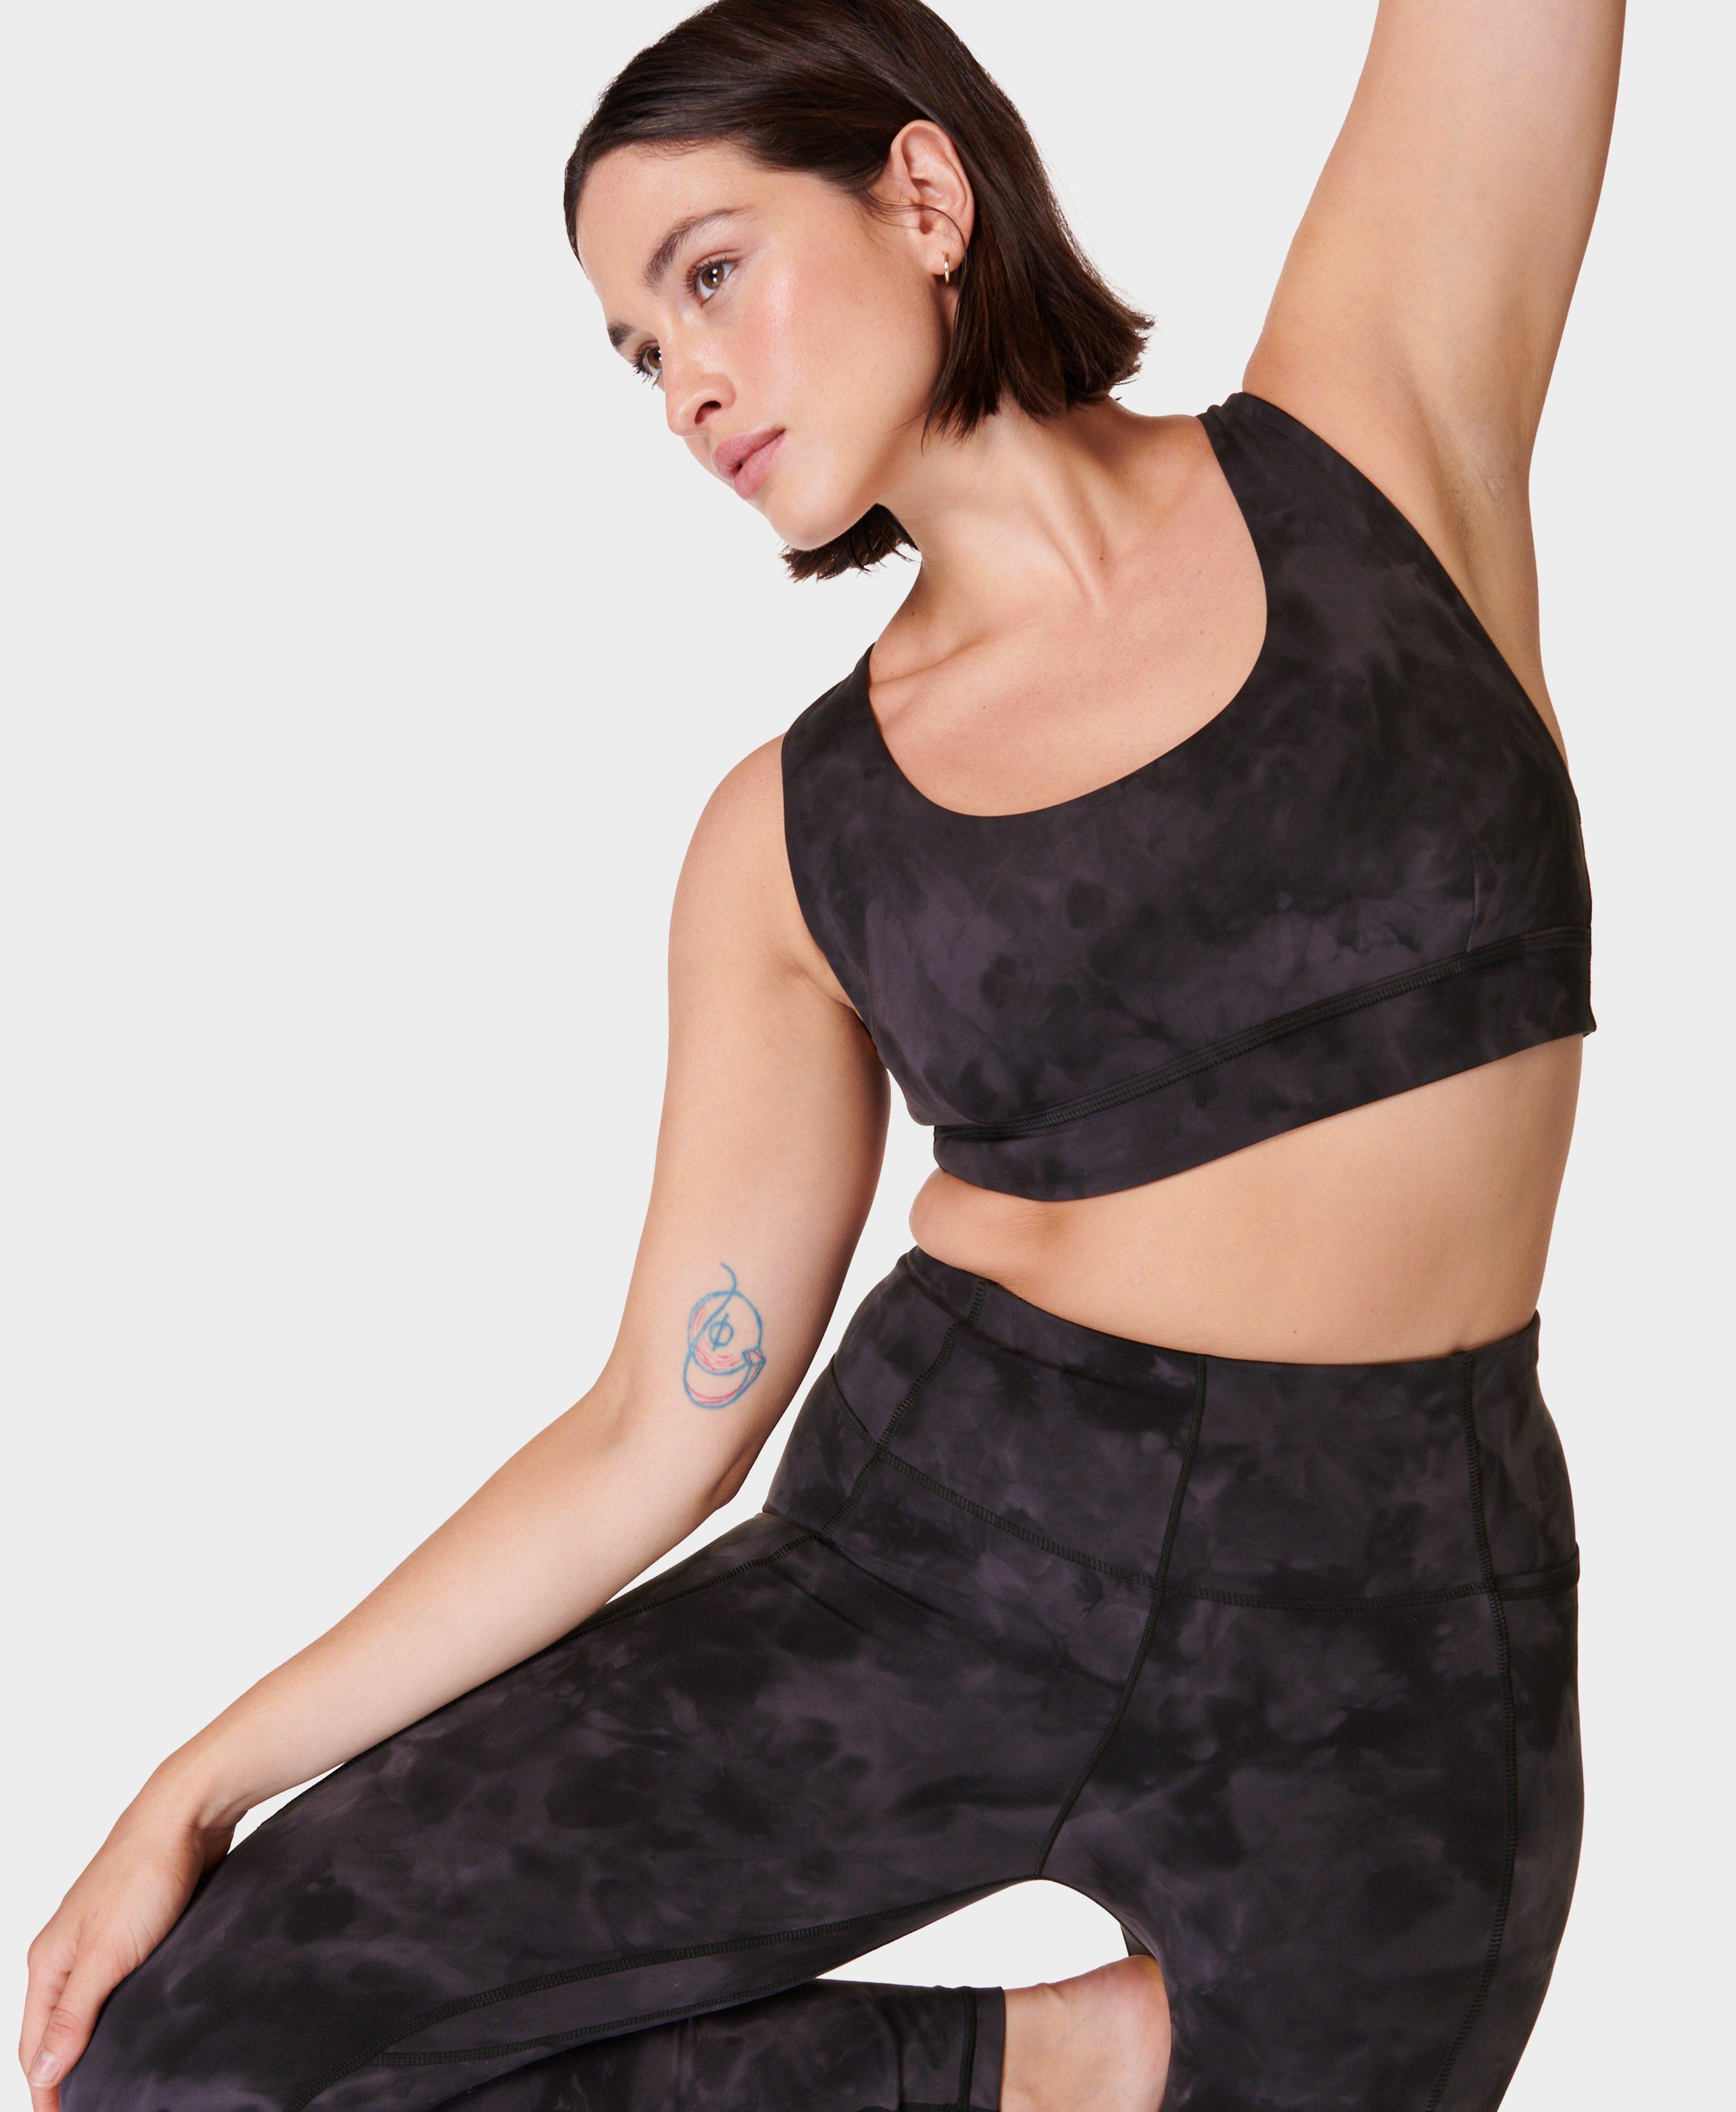 Buy Sweaty Betty Black Mindful Flex Seamless Yoga Bra from Next USA